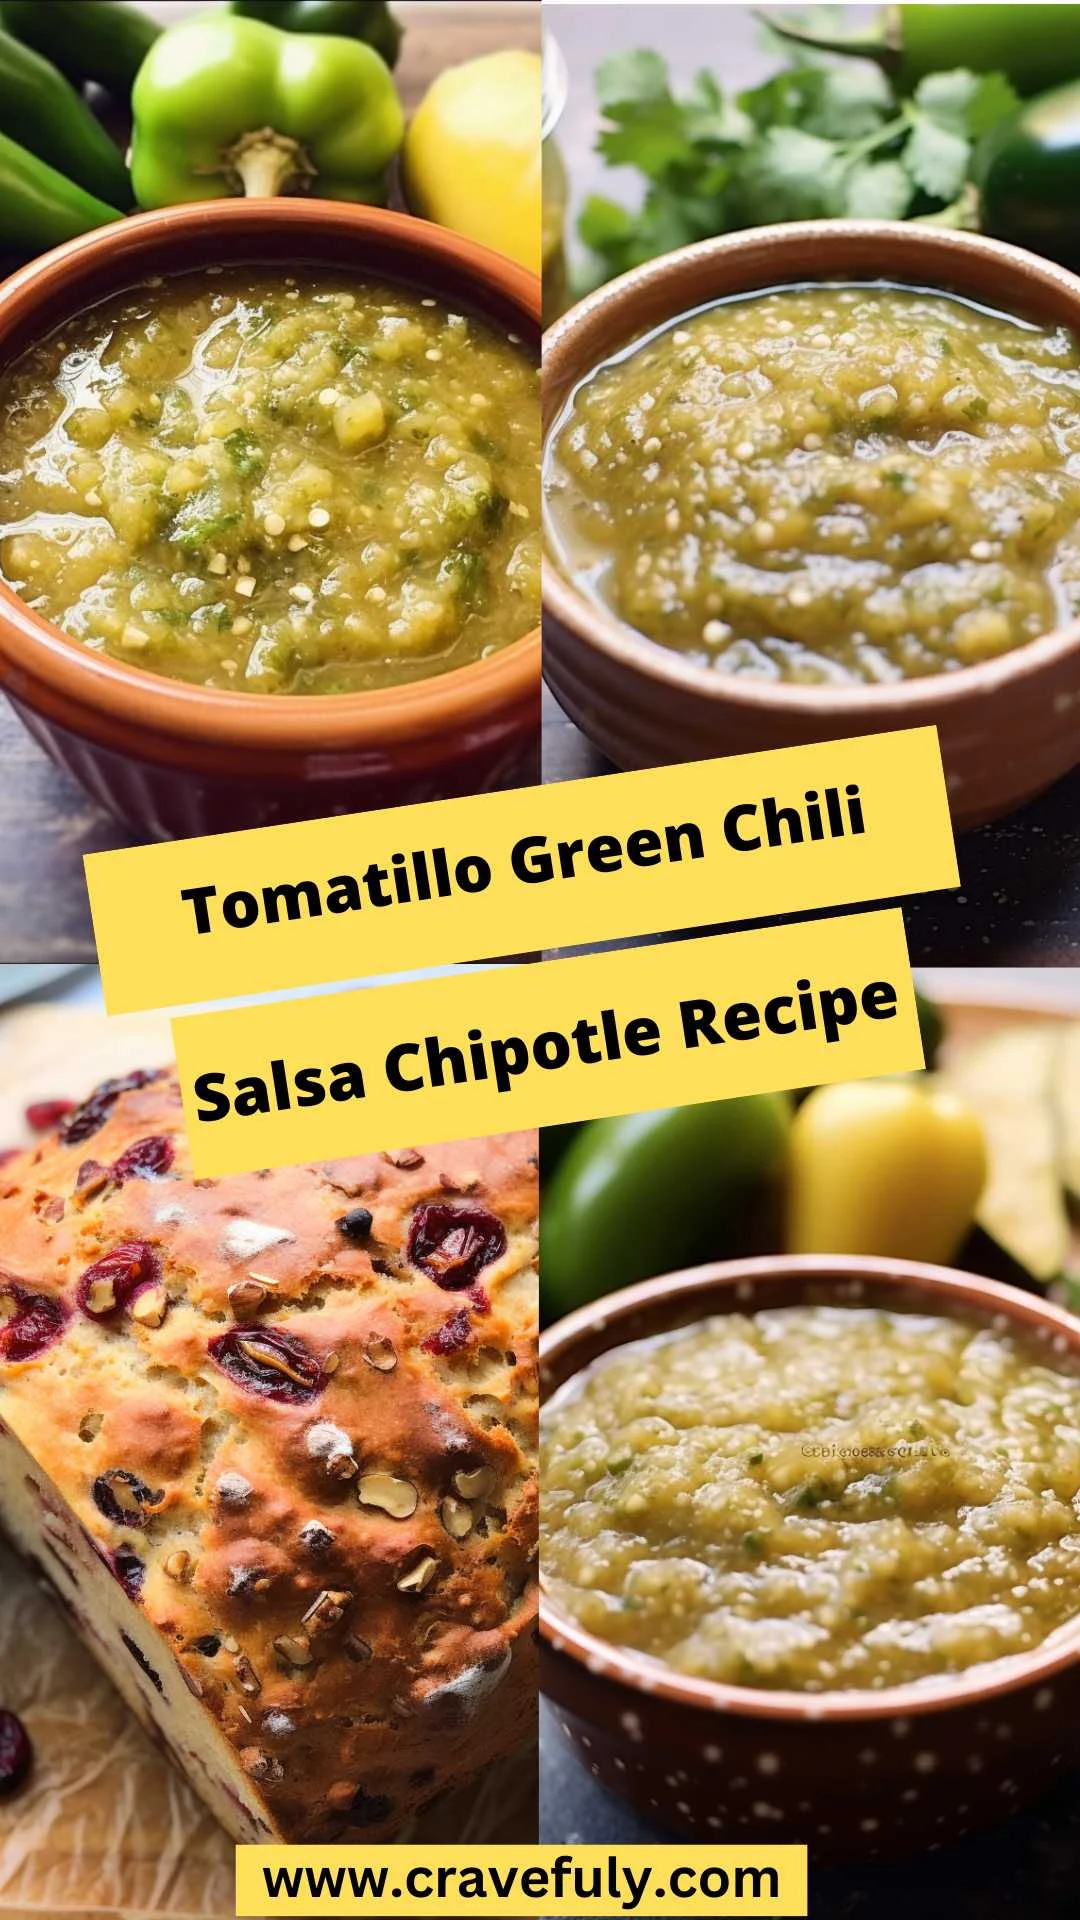 Tomatillo Green Chili Salsa Chipotle Recipe